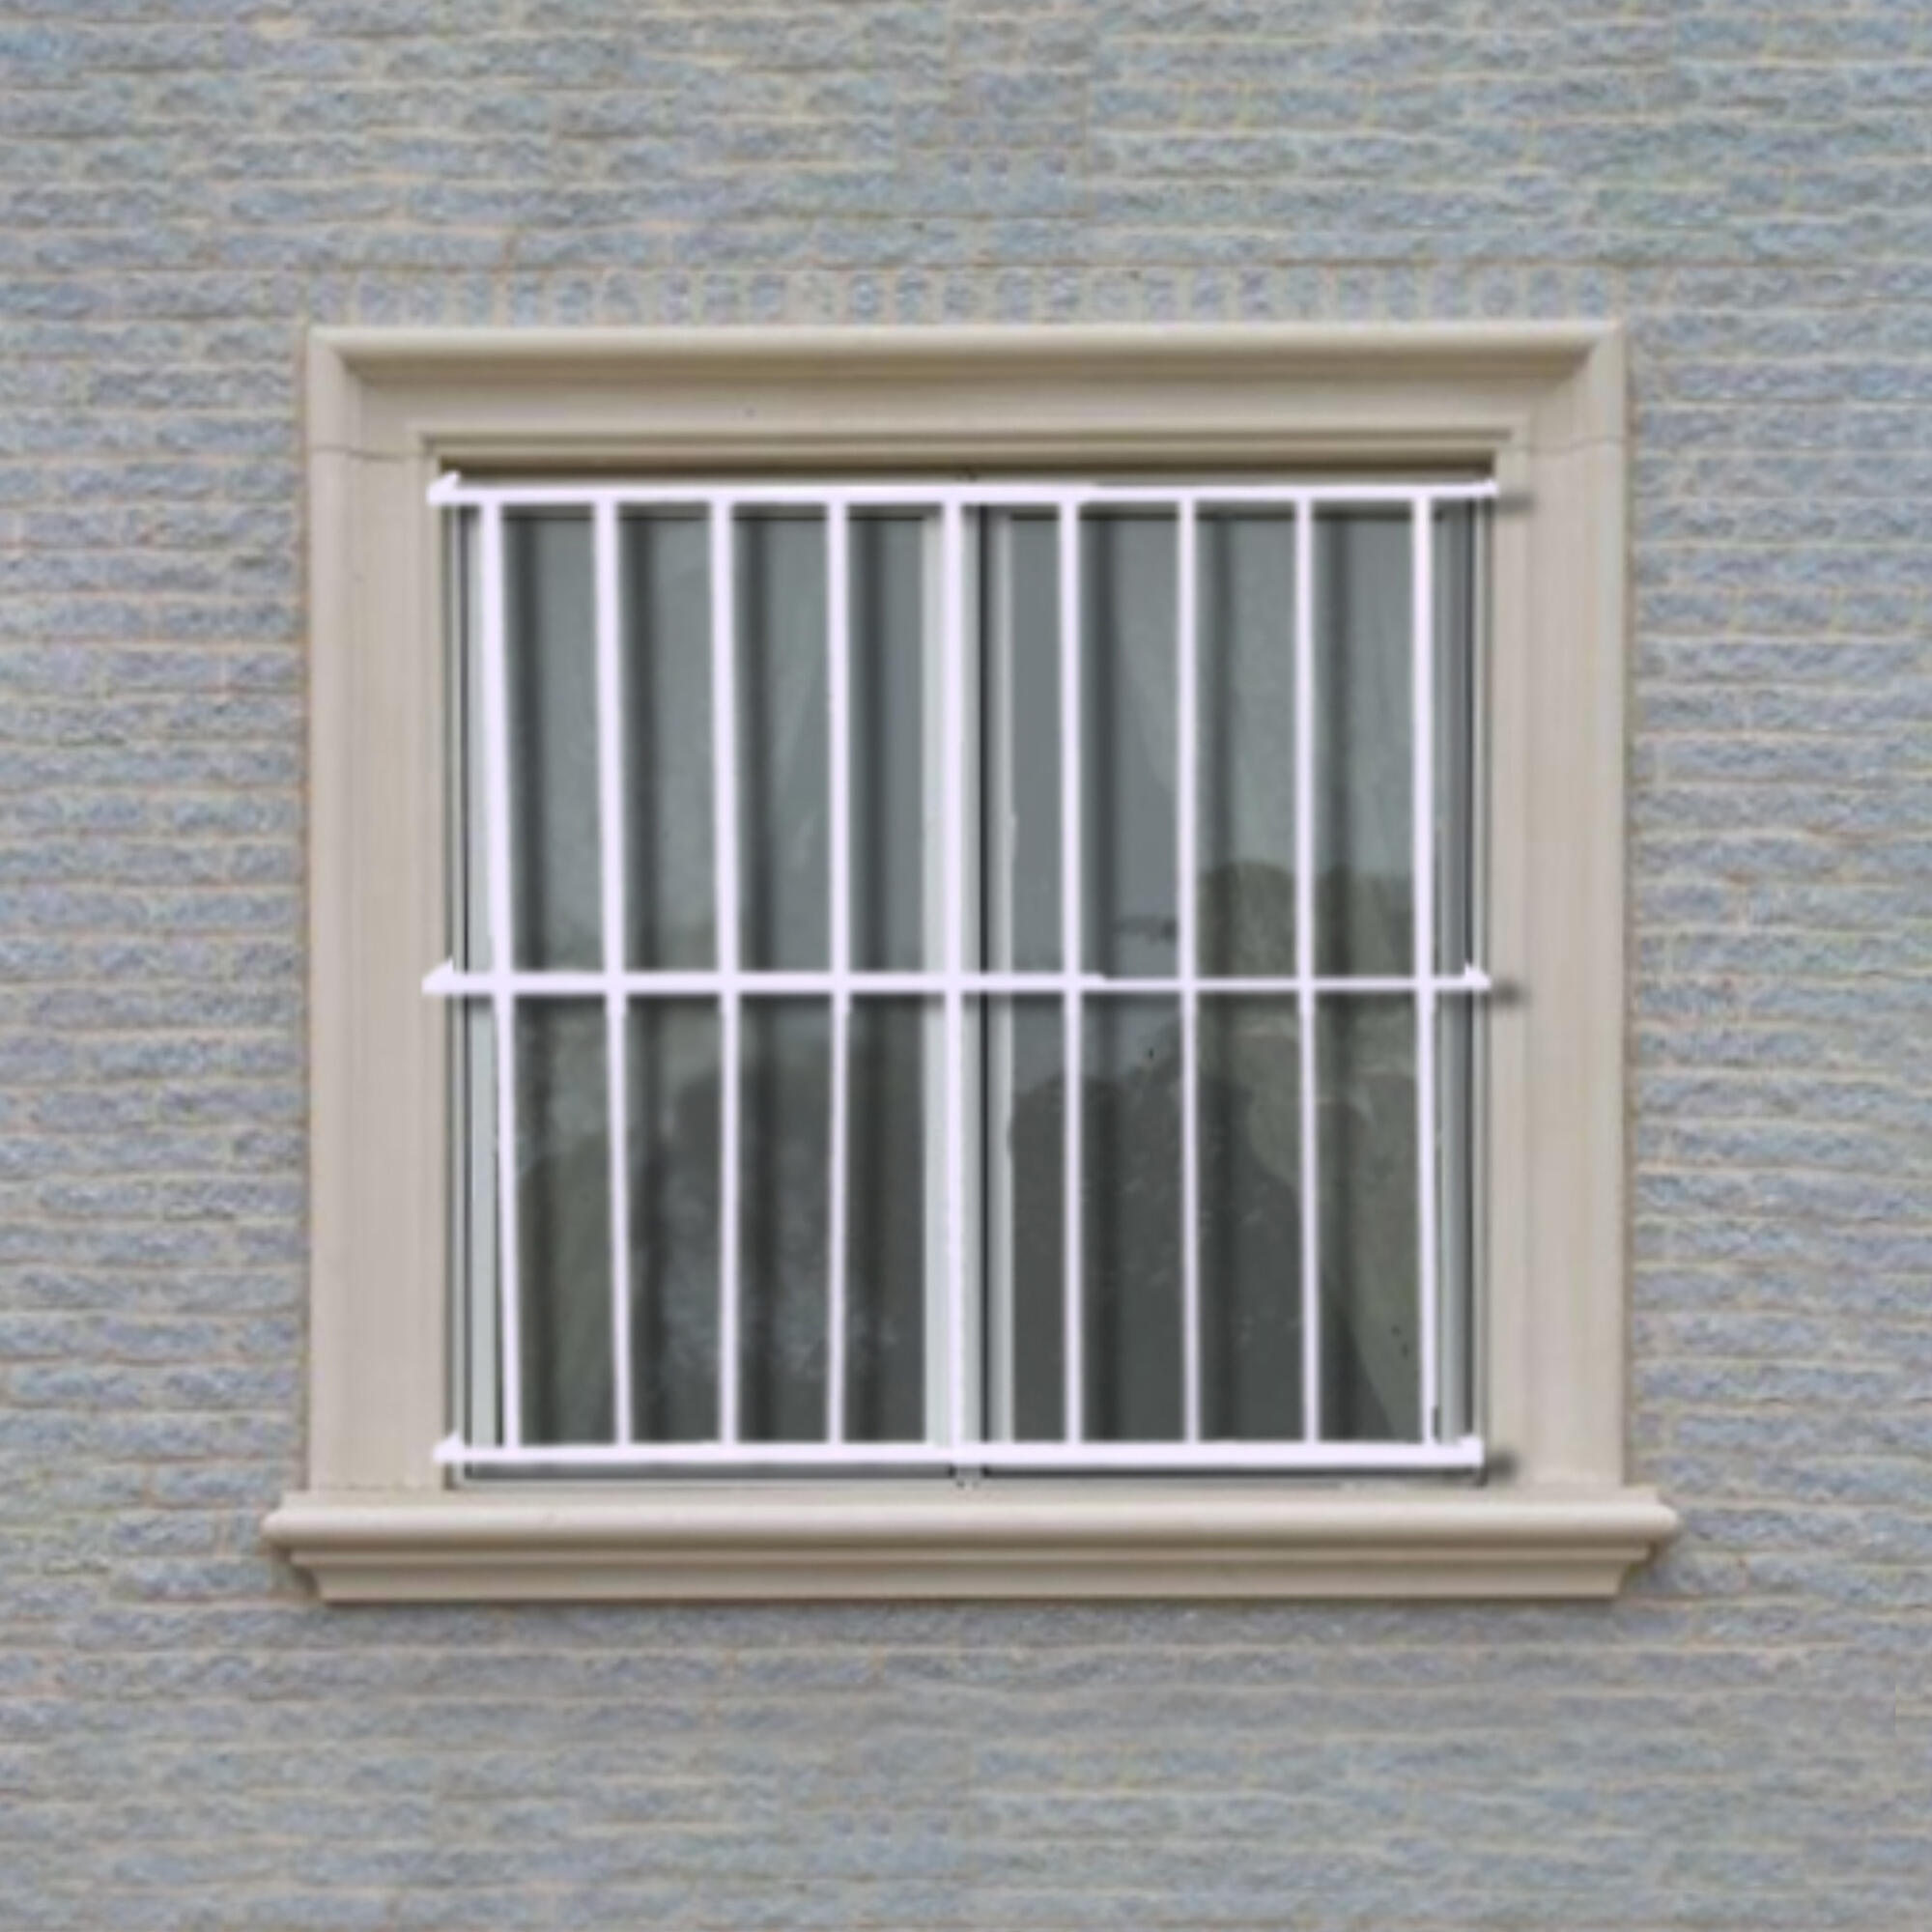 Correcto mantenimiento de las rejas para ventanas